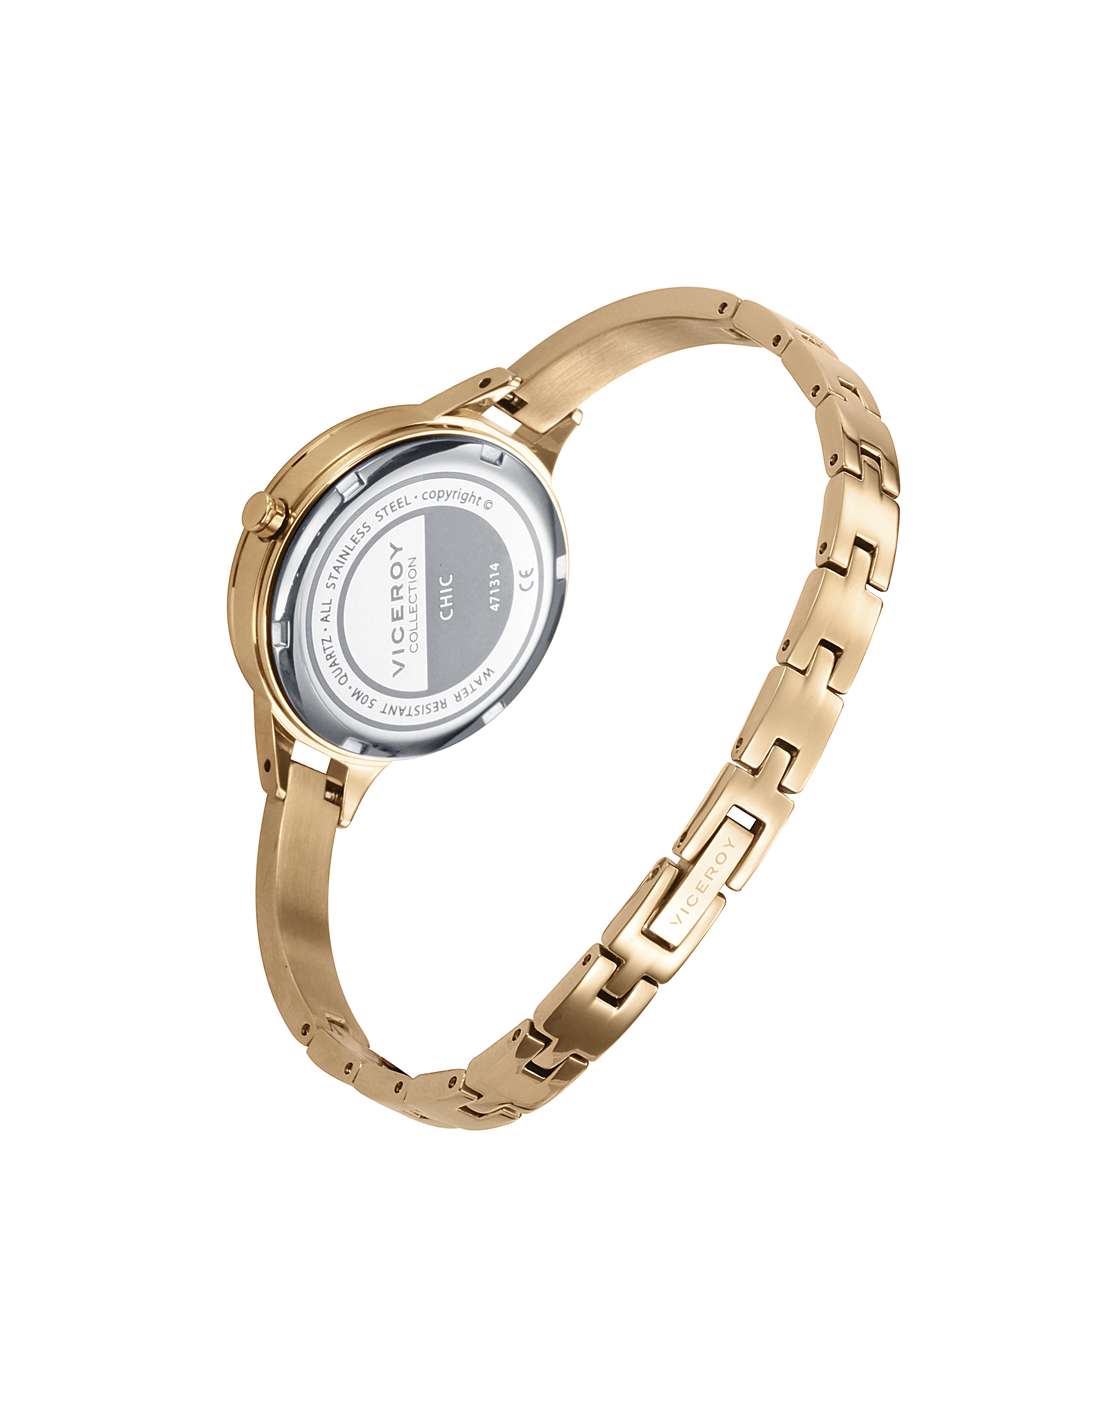 Viceroy - Reloj de mujer Viceroy Chic con caja y brazalete de acero bicolor